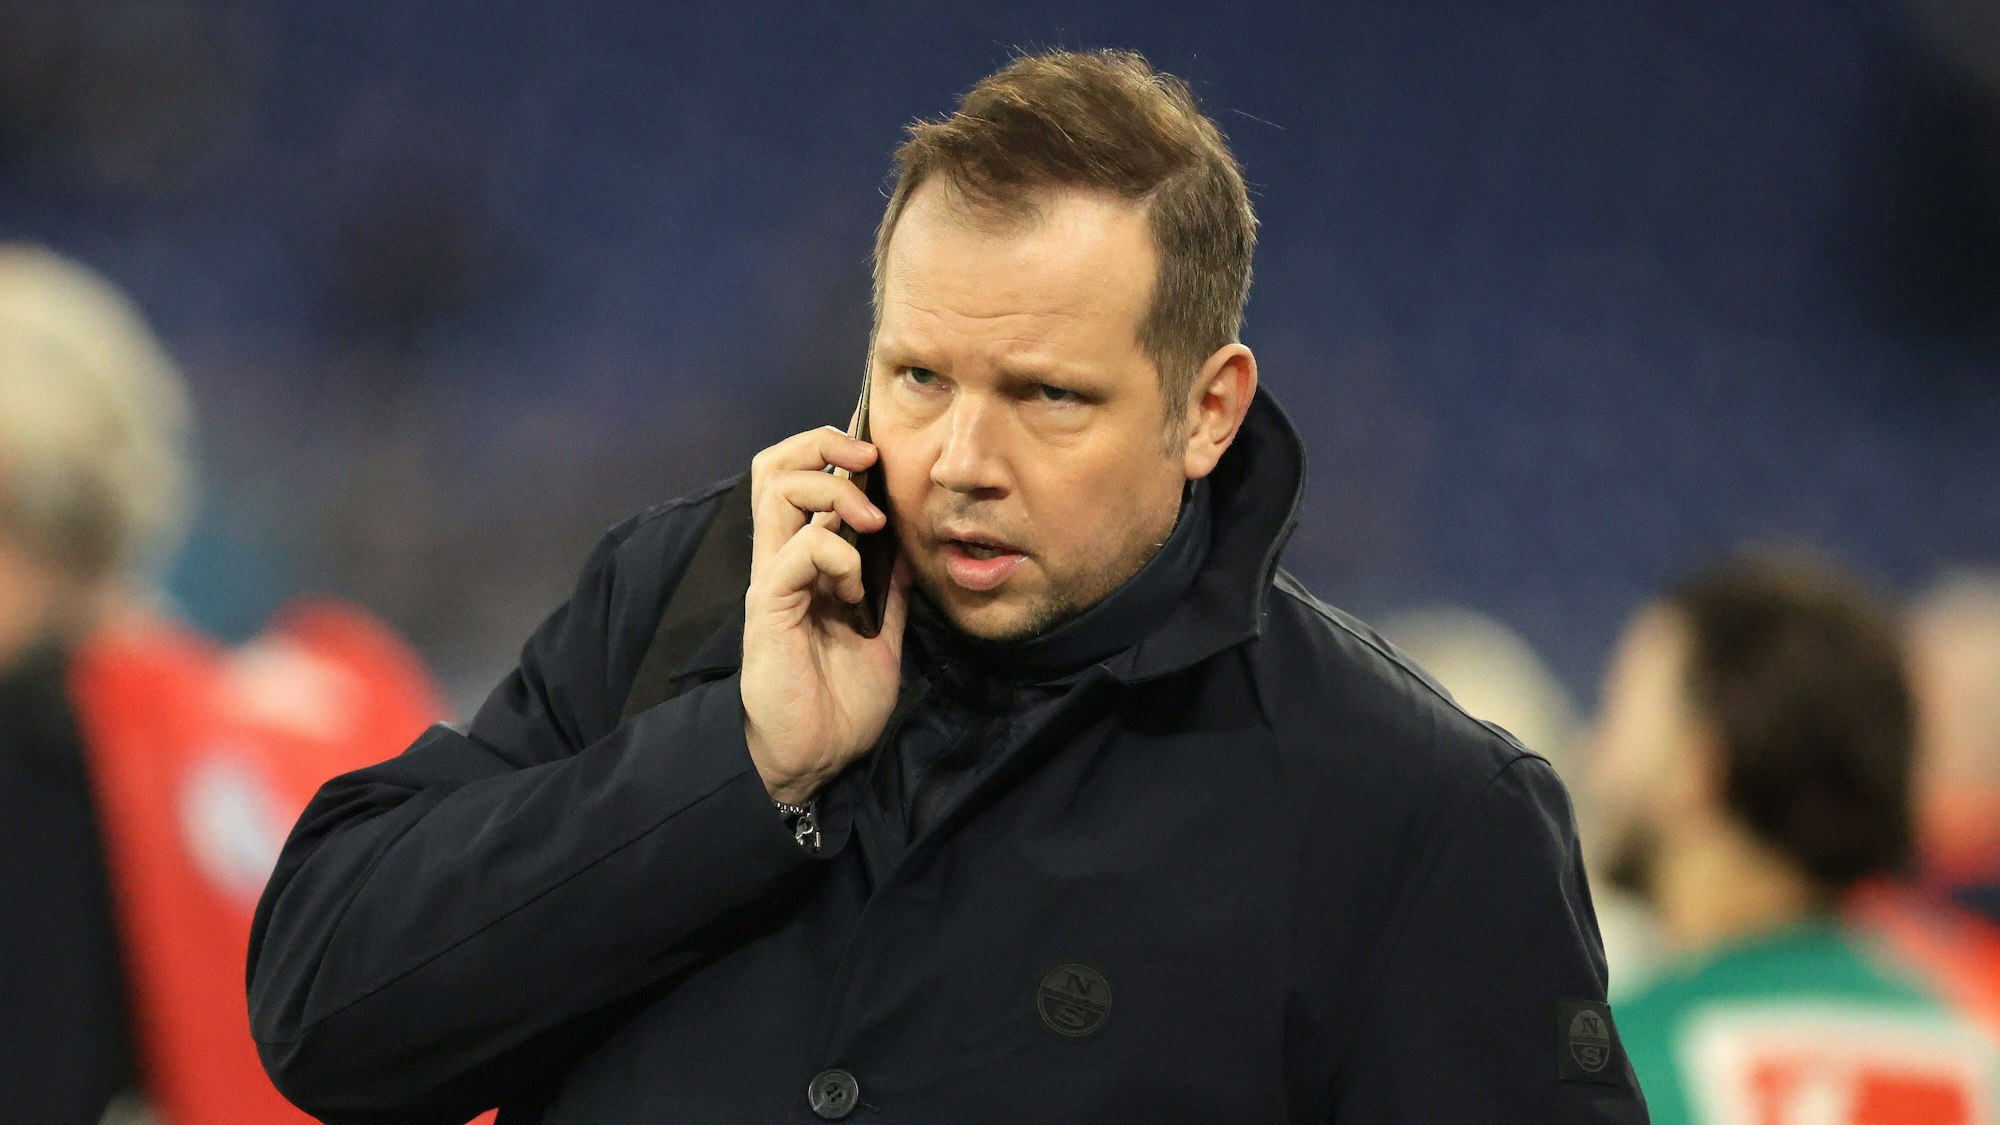 Wolff-Christoph Fuss telefoniert am Spielfeldrand.